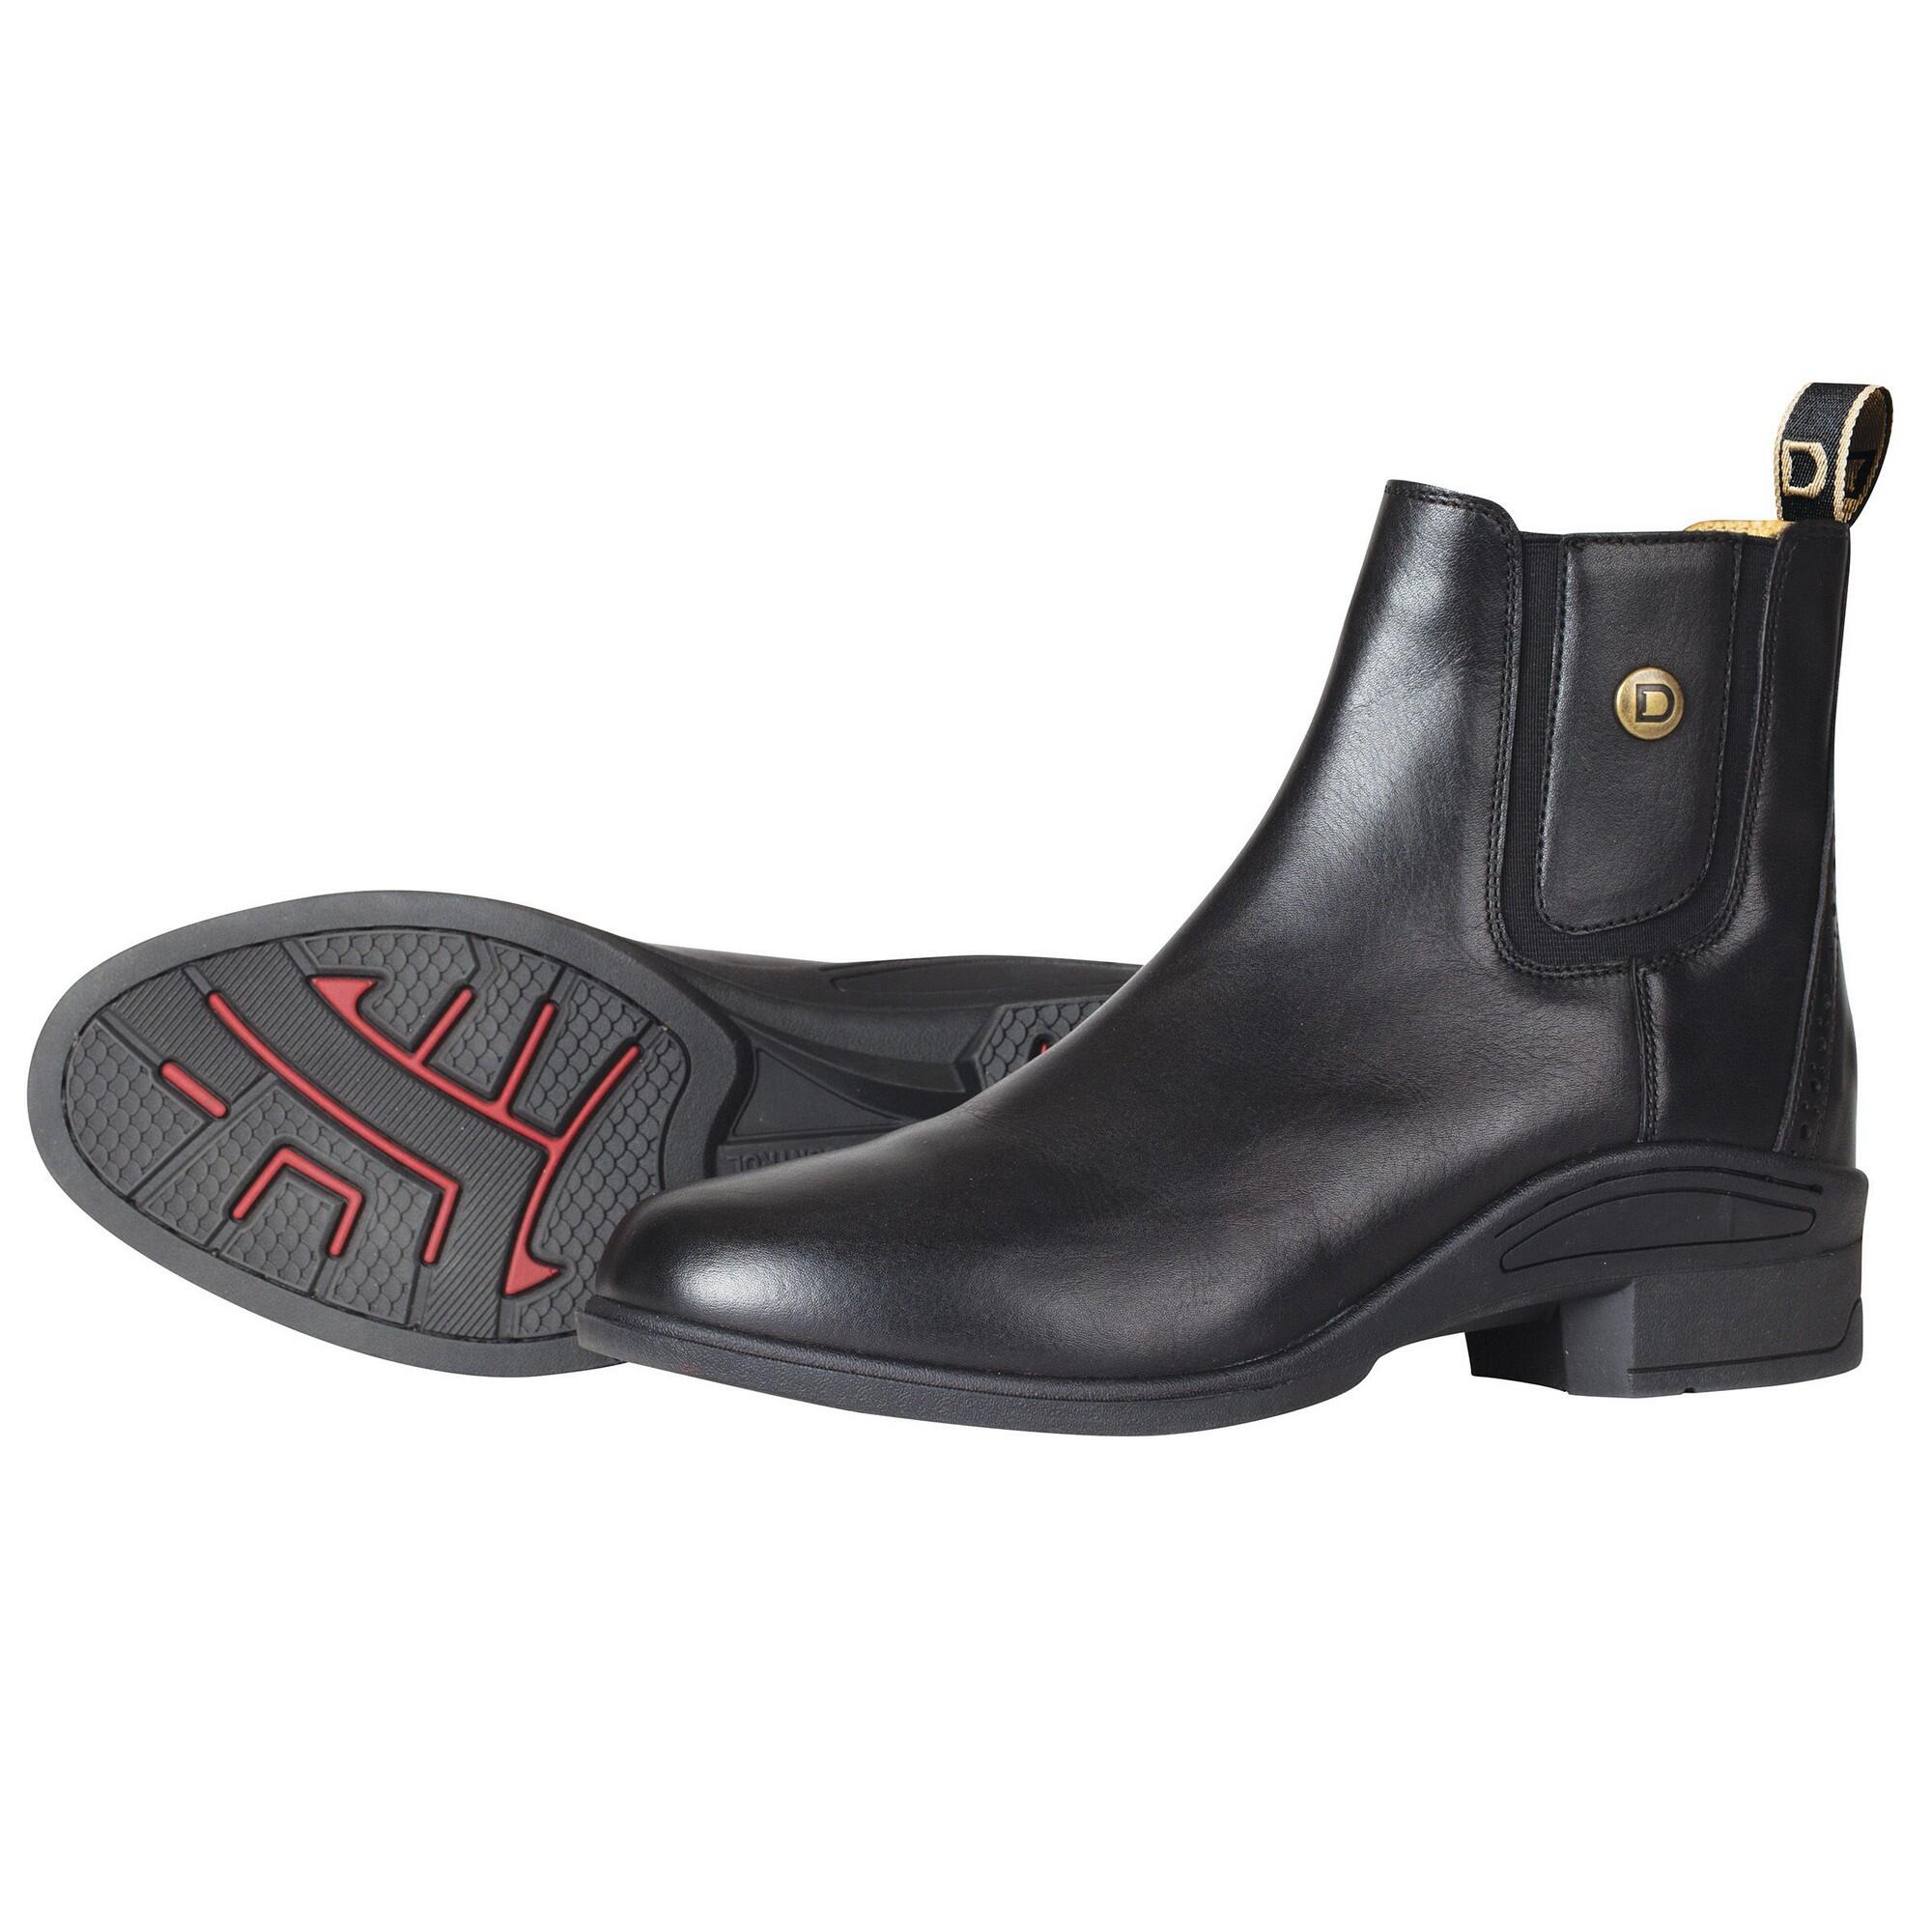 DUBLIN Unisex Adult Rapture Leather Jodhpur Boots (Black)